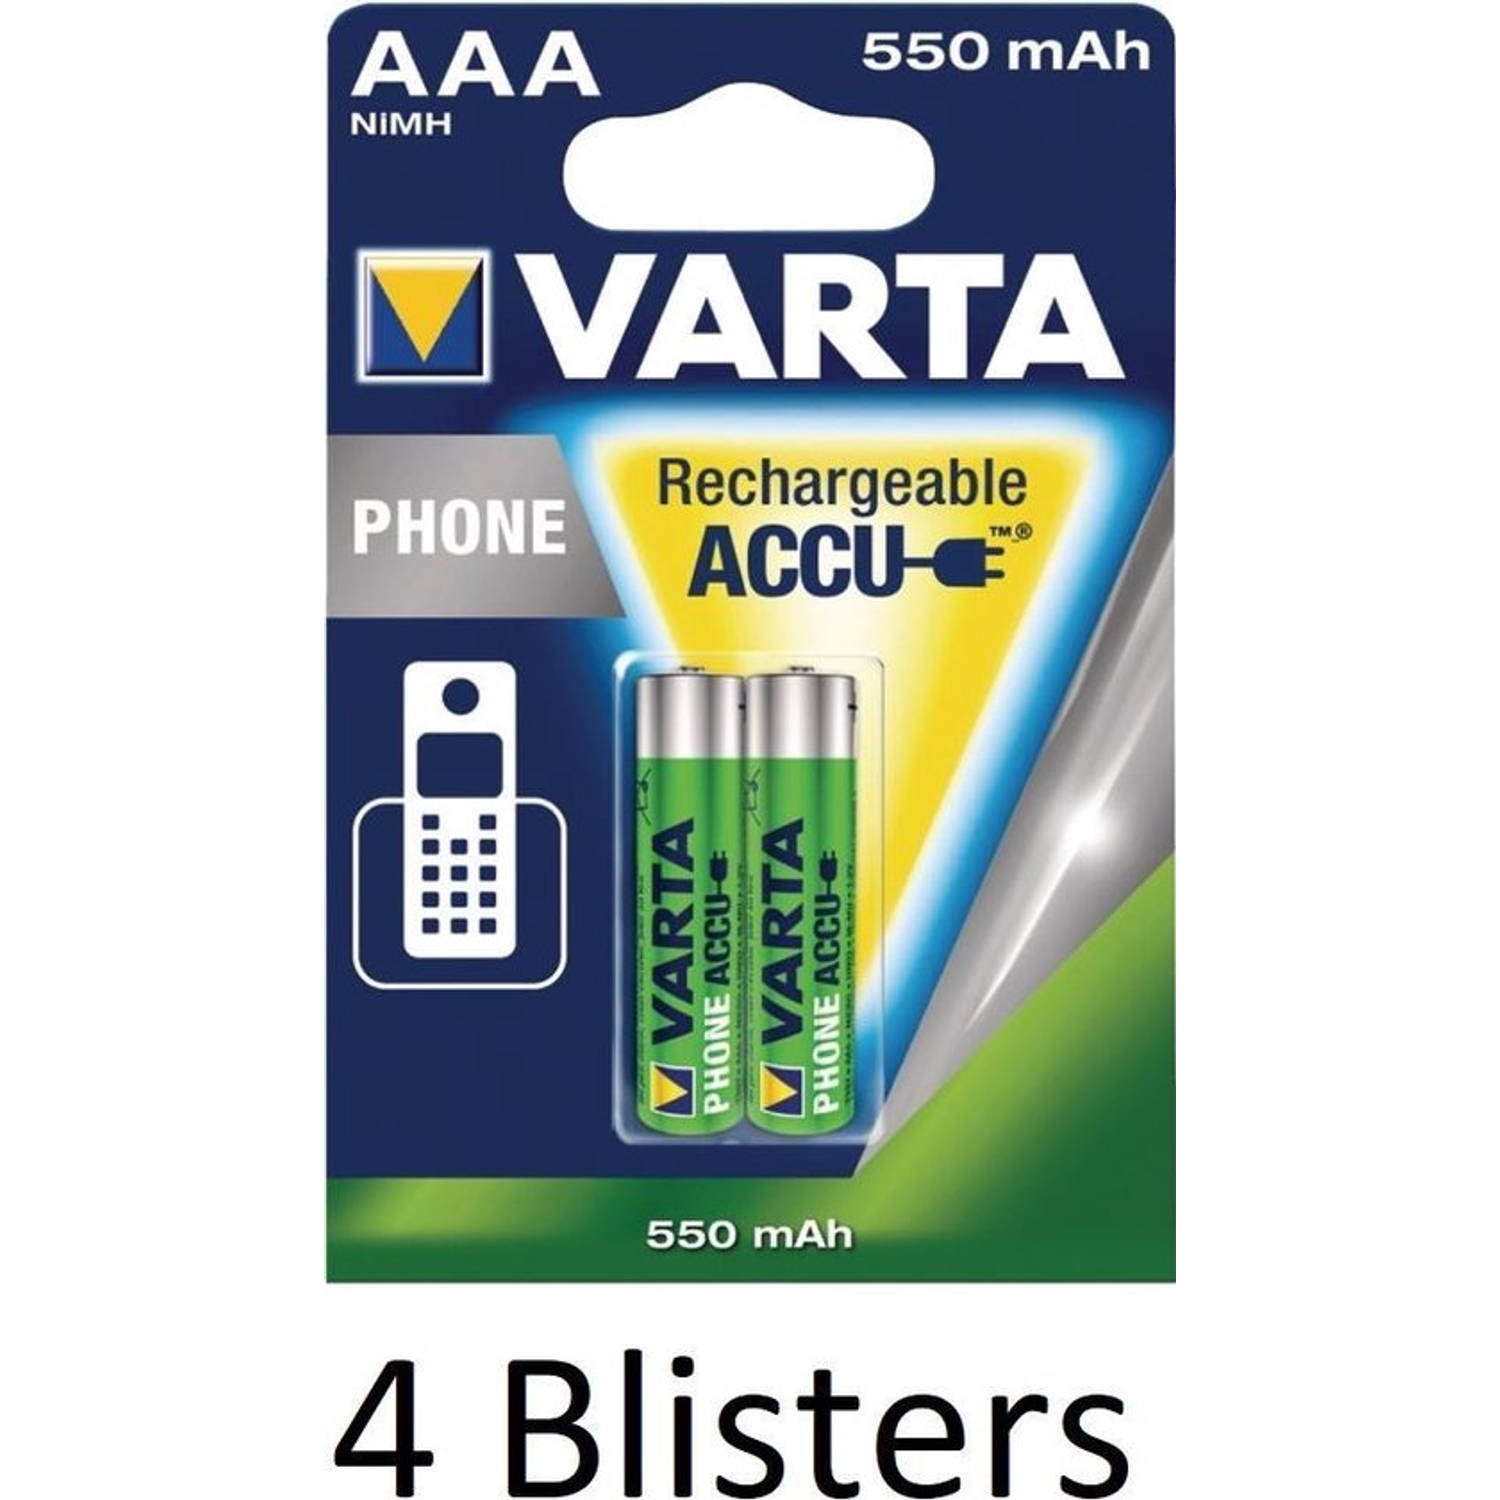 voorzichtig Natuur Denken 8 Stuks (4 Blisters a 2 st) Varta oplaadbare batterijen AAA, 550 mAh |  Blokker